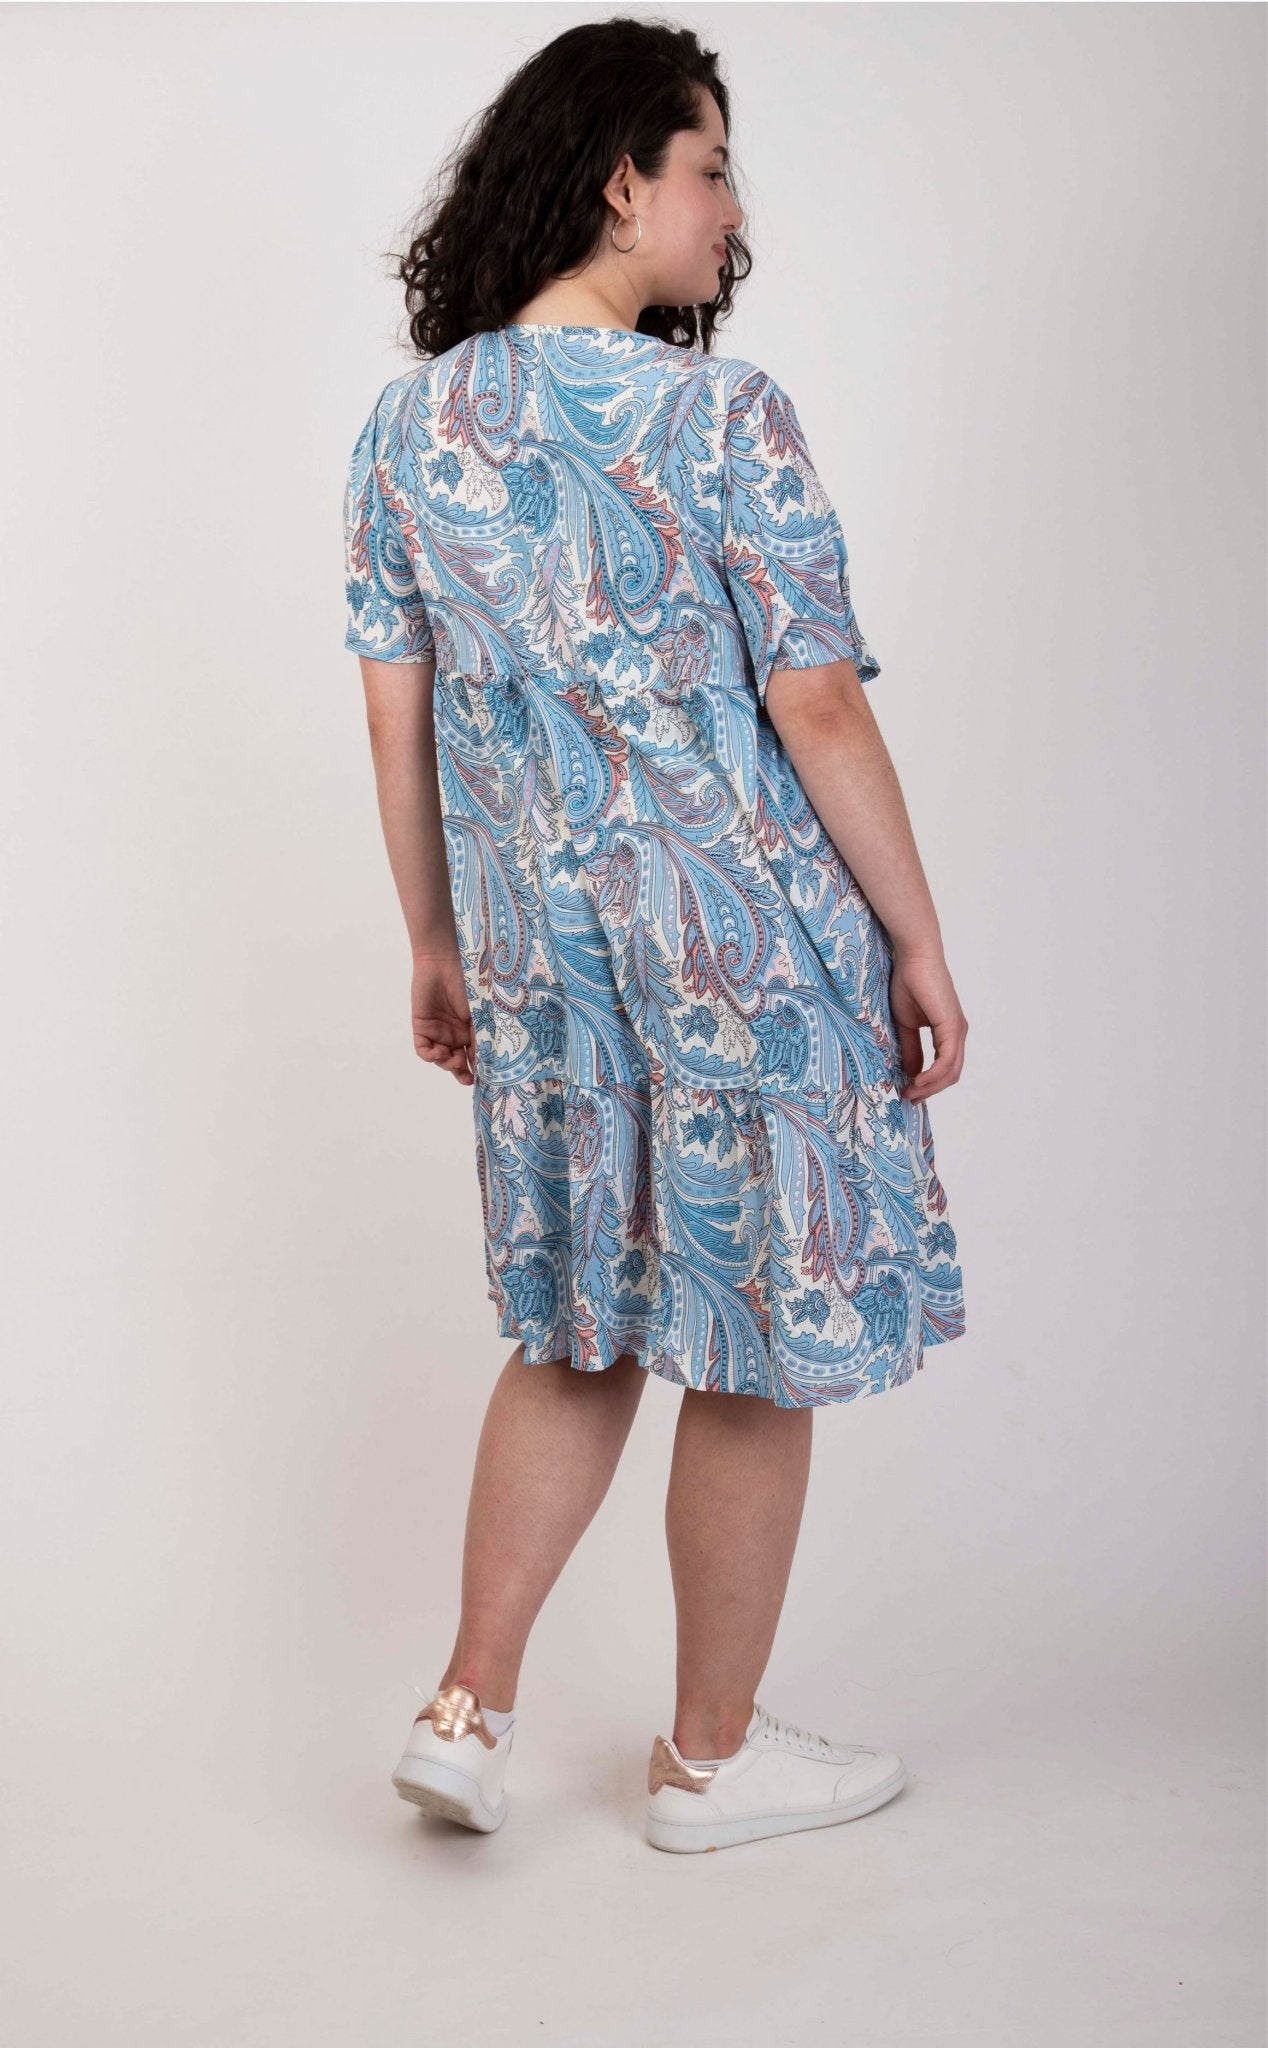 Kopie von Unwiderstehlich charmant: Kurzes Sommerkleid mit verspieltem Blumendruck - incurvy